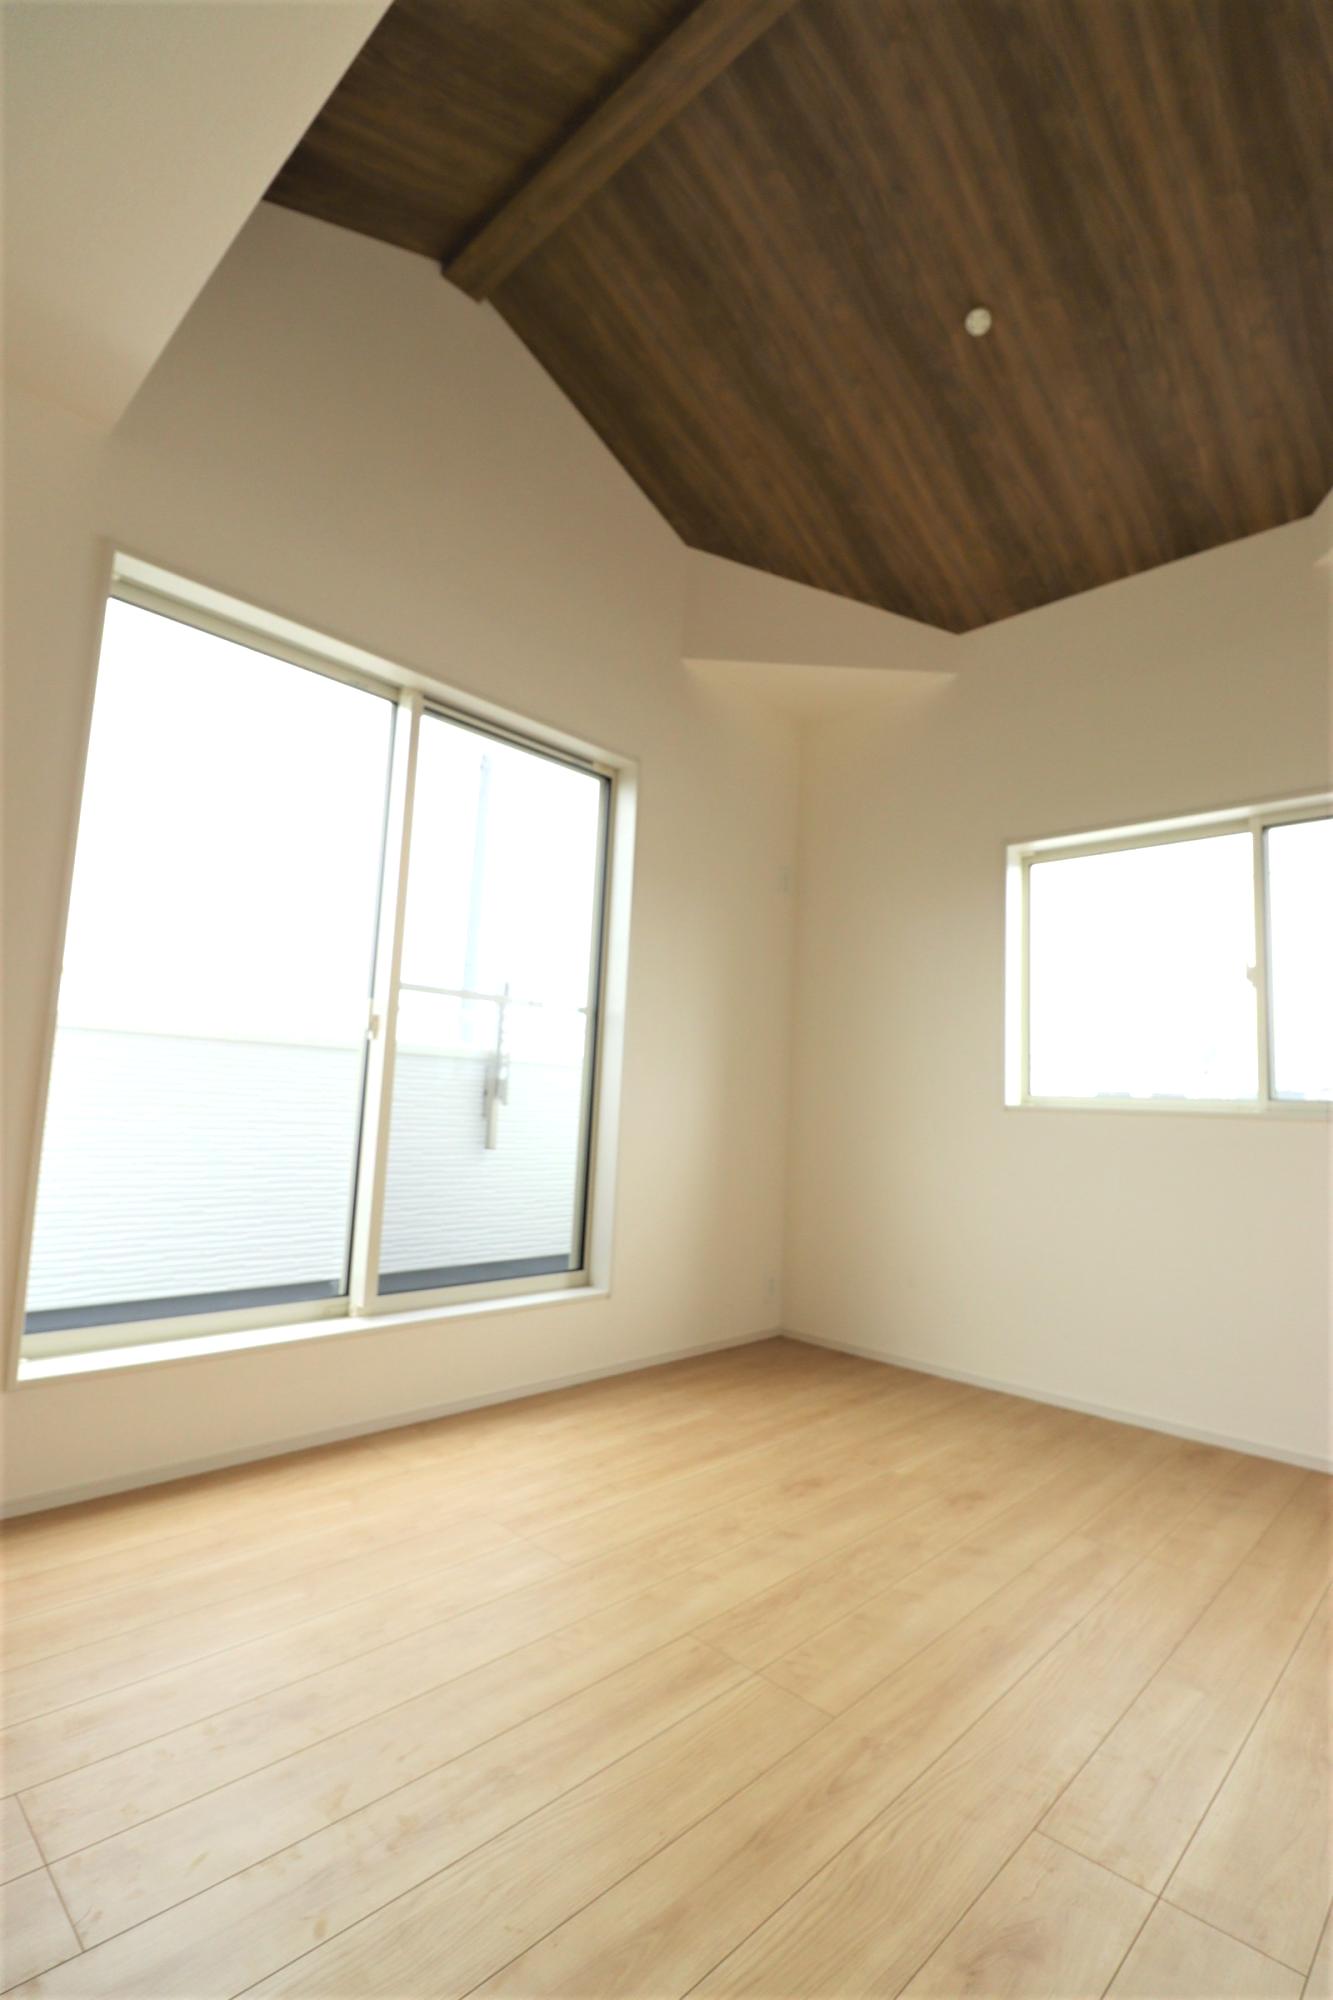 3号棟　洋室6.0帖　同じ面積の部屋であっても、勾配天井を用いている部屋は自然と視線が上部に抜けるため、広々とした空間を感じることができます。